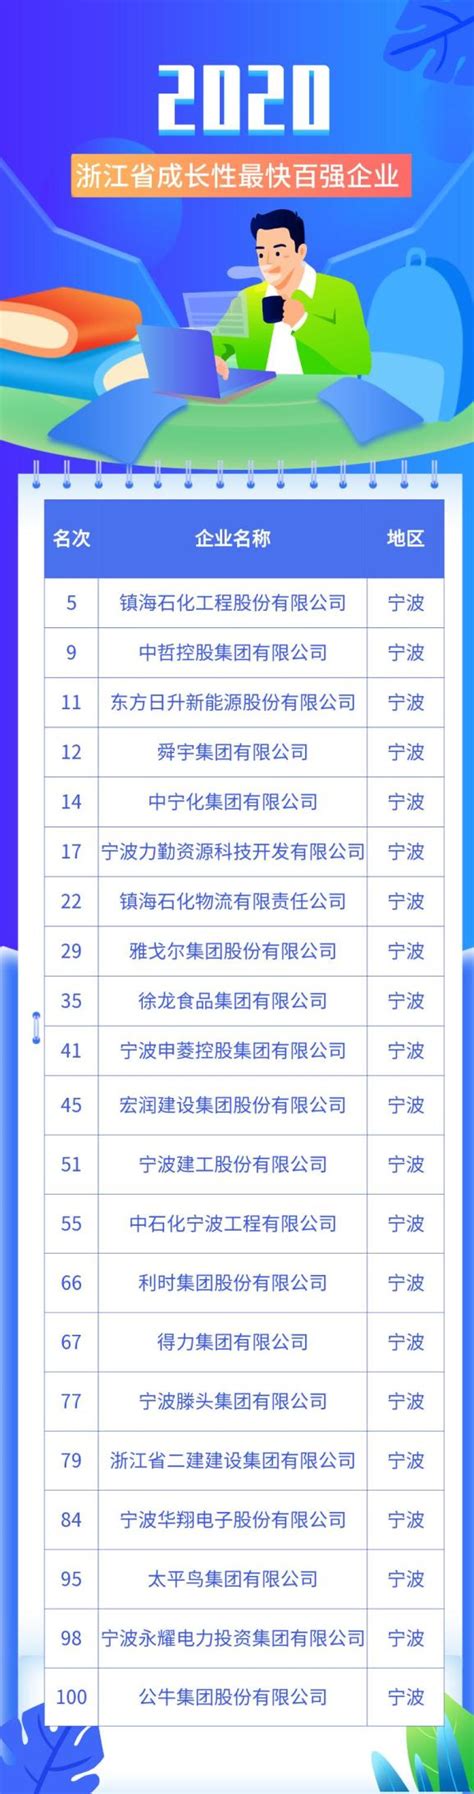 2018年1-9月 宁海县进出口前100强企业排名榜--今日宁海